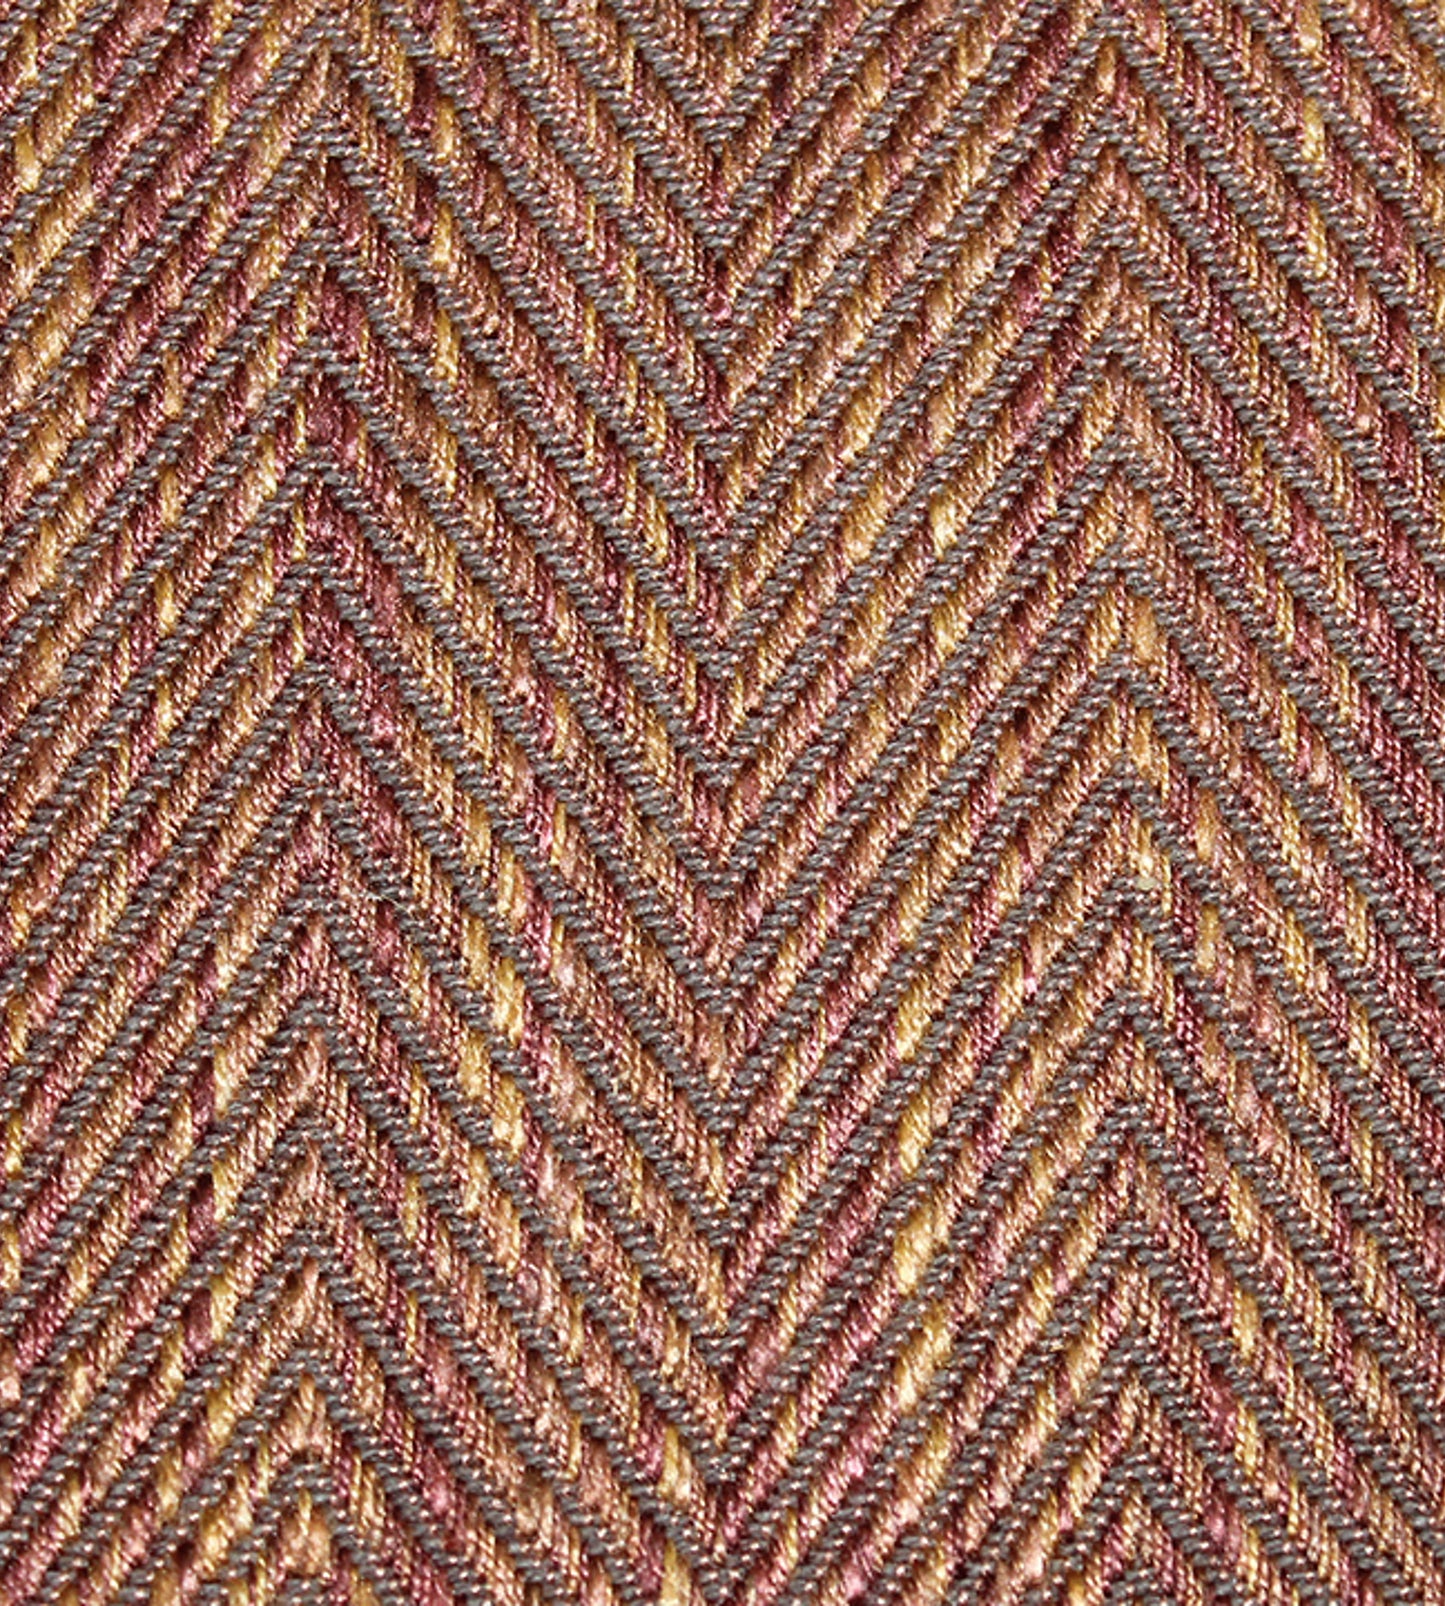 Purchase Scalamandre Fabric Item SC 000726977, Cambridge Bronze 1